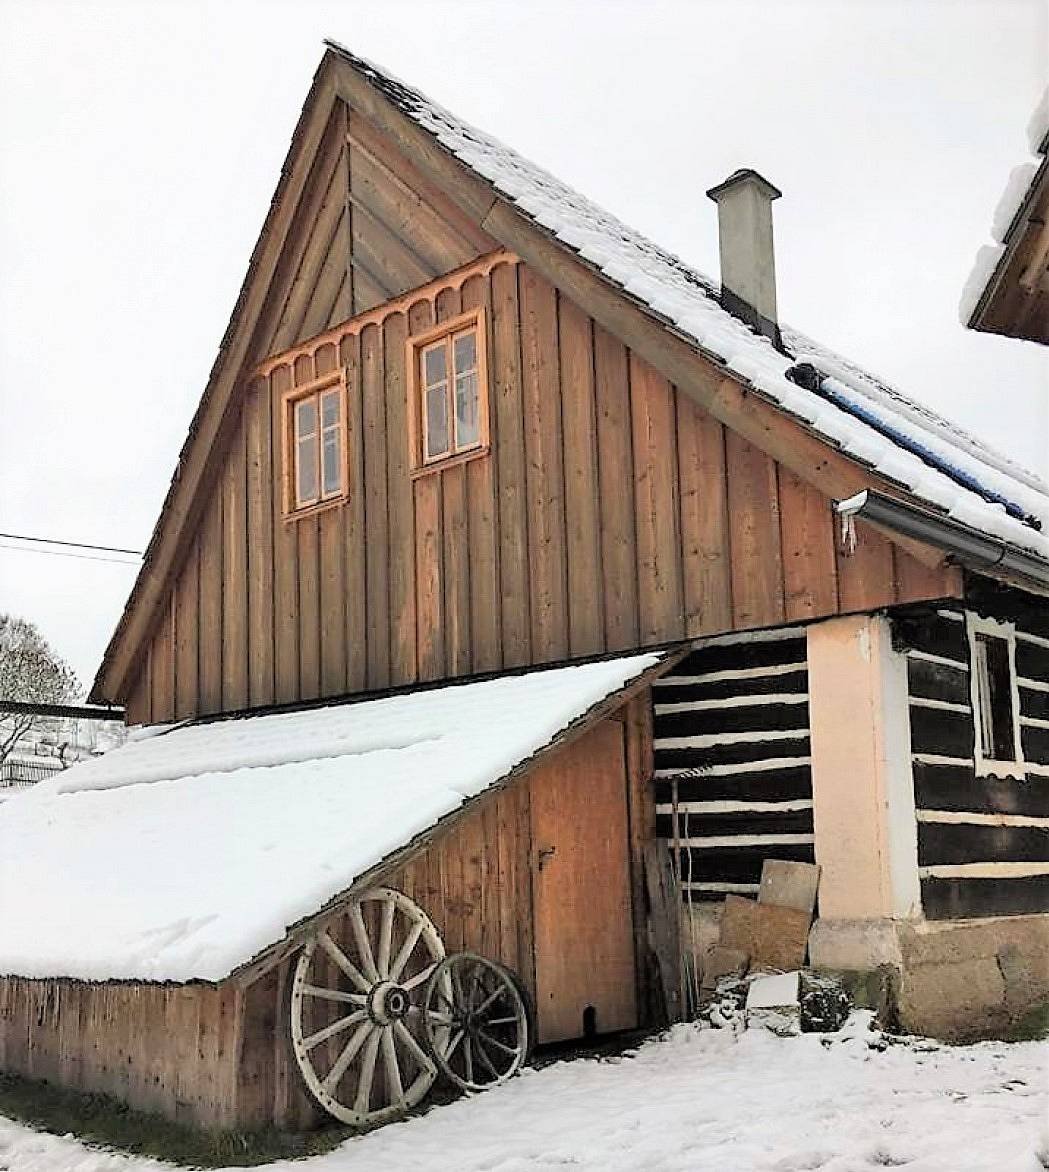 The fairytale log house of Horní Staré Buky